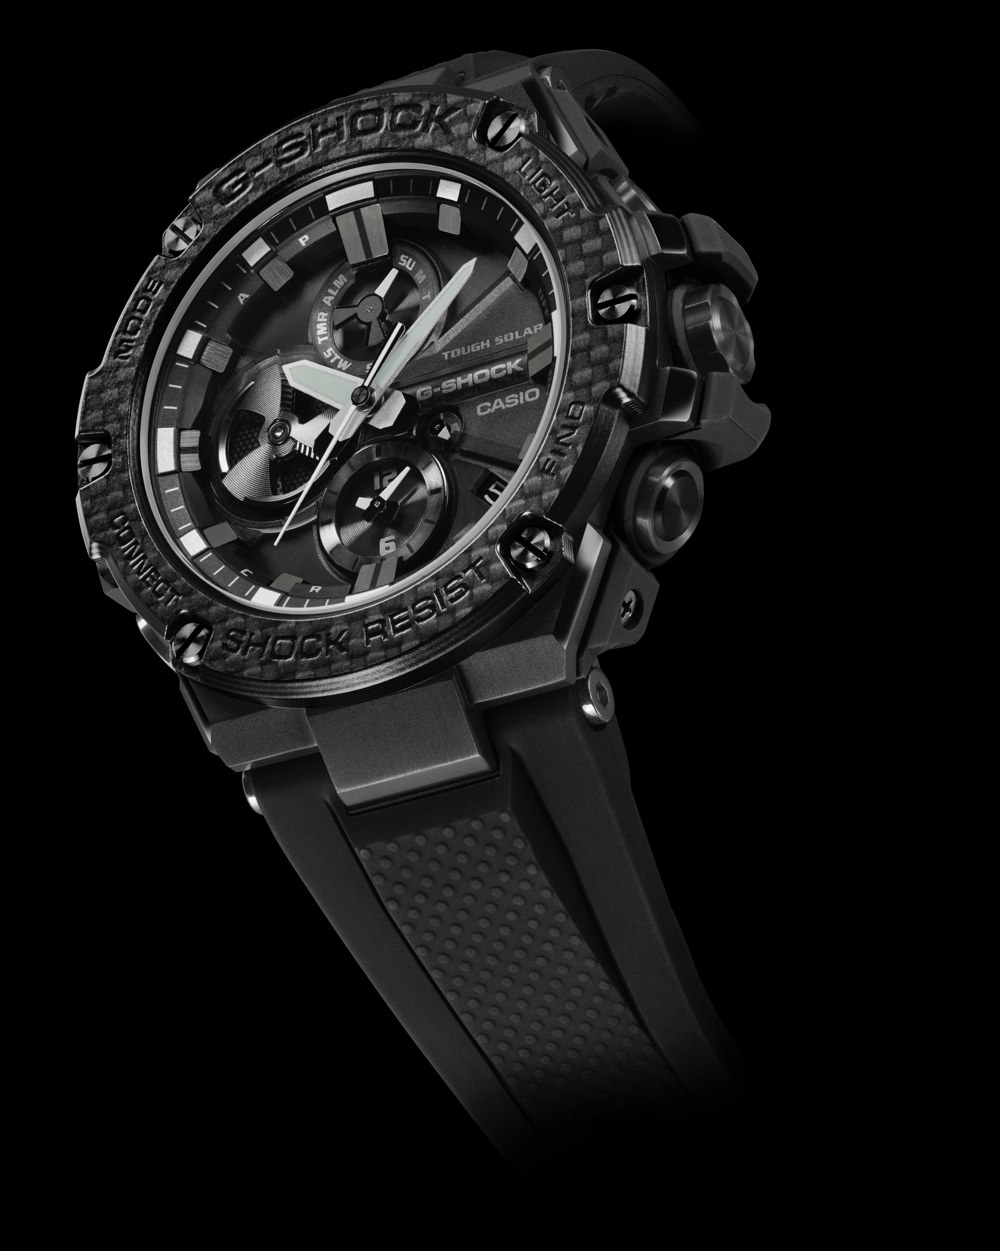 The G-SHOCK G-STEEL GSTB100X-1A timepiece